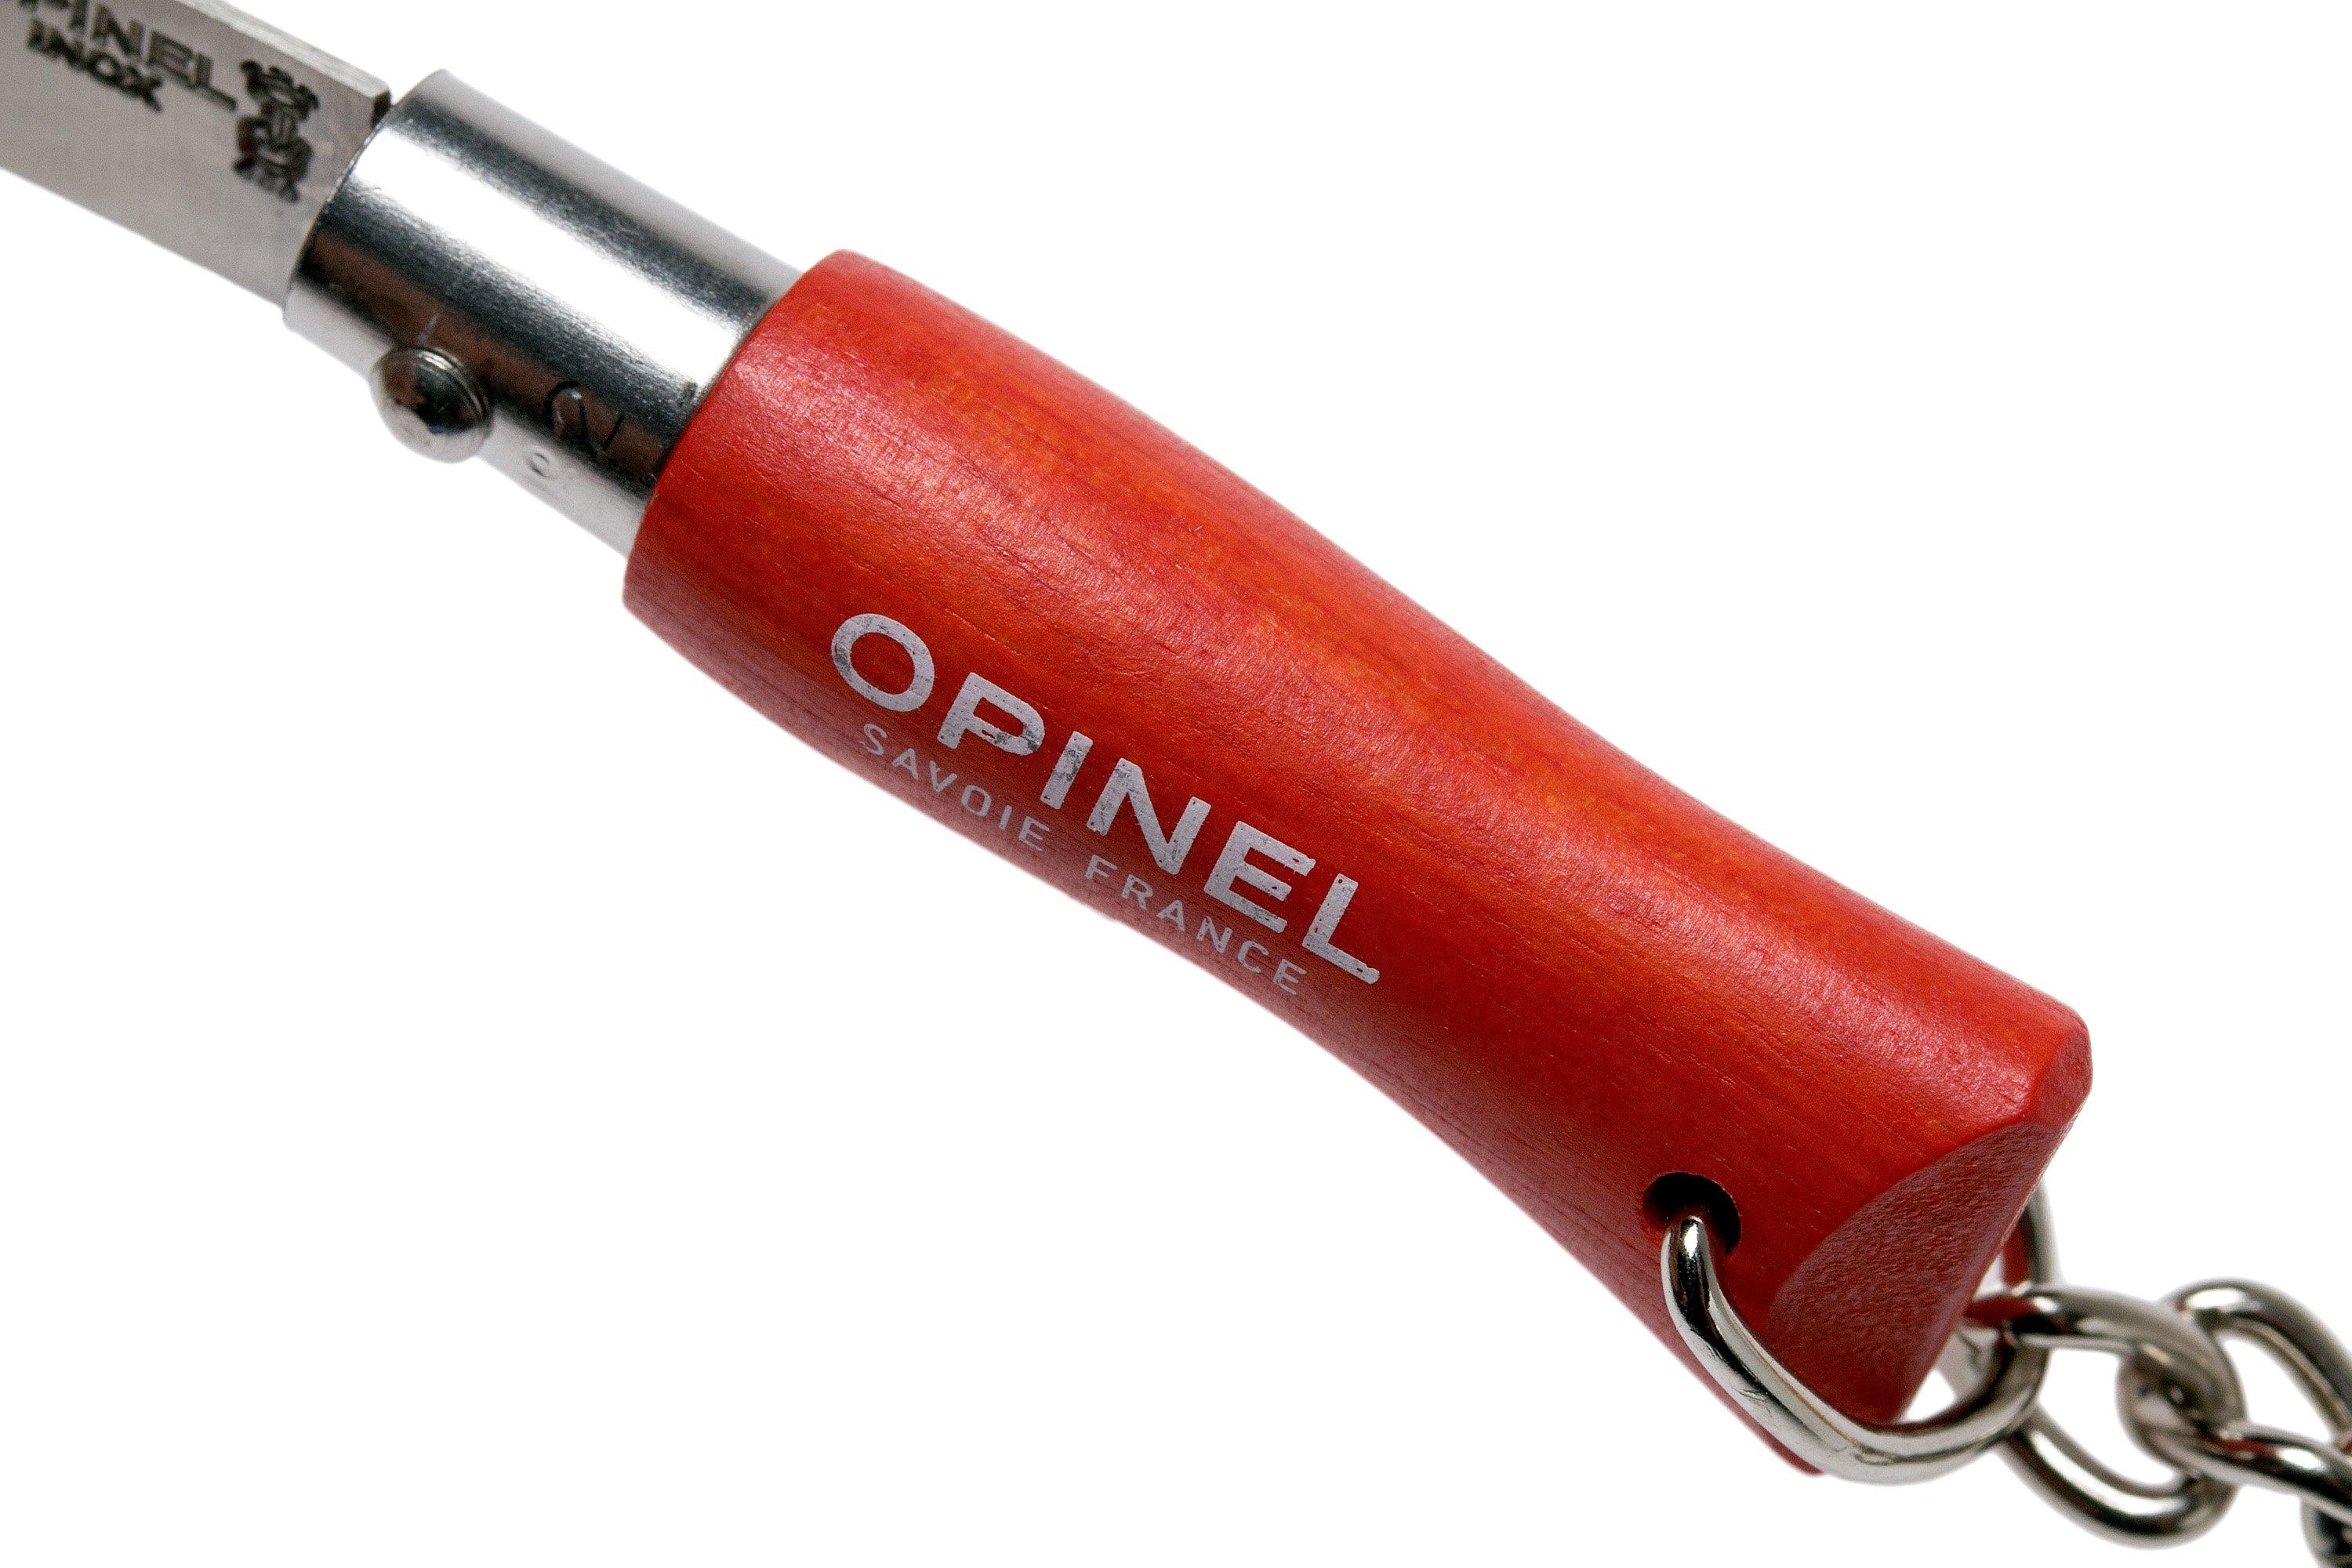 Navaja llavero Opinel 02 3,5cm, mejor precio y servicio en Aventuramania  con Opinel